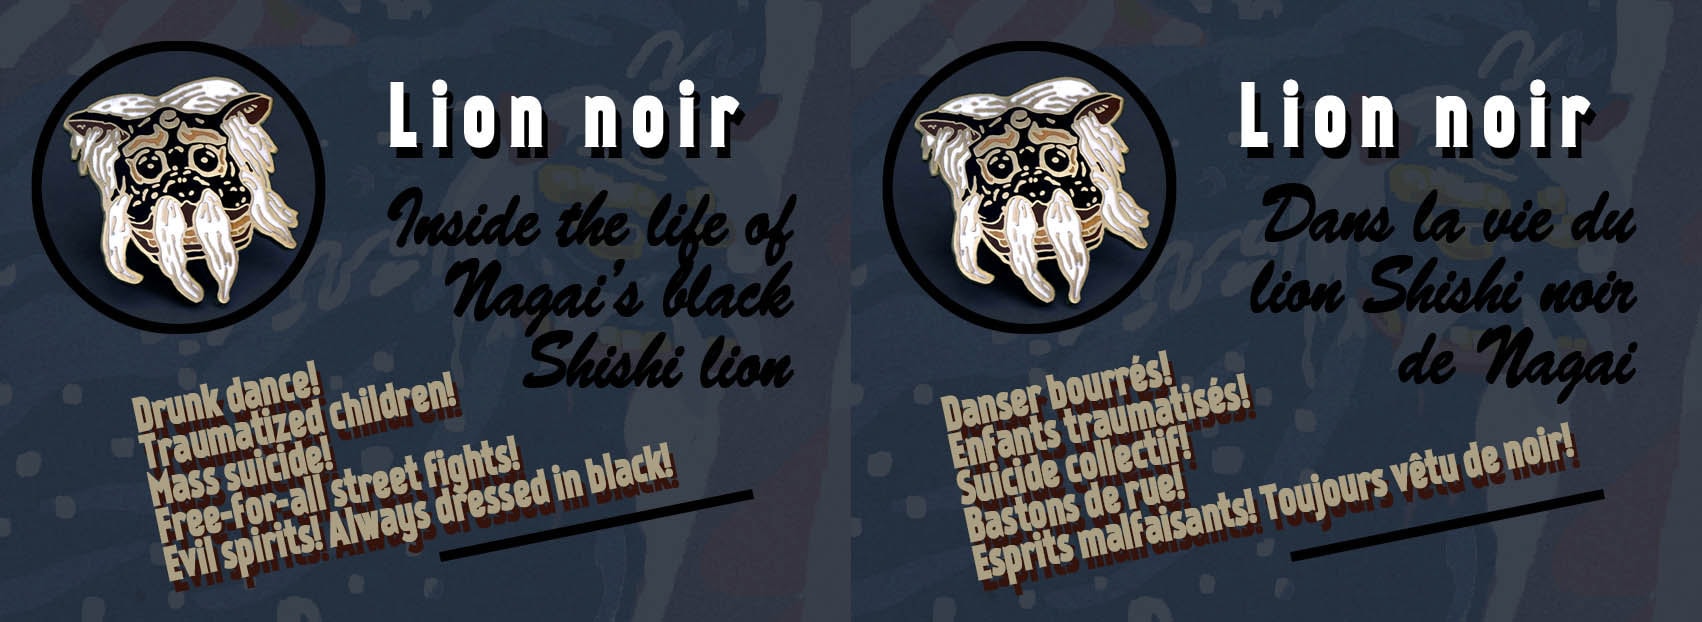 Inside the life of Nagais black lion